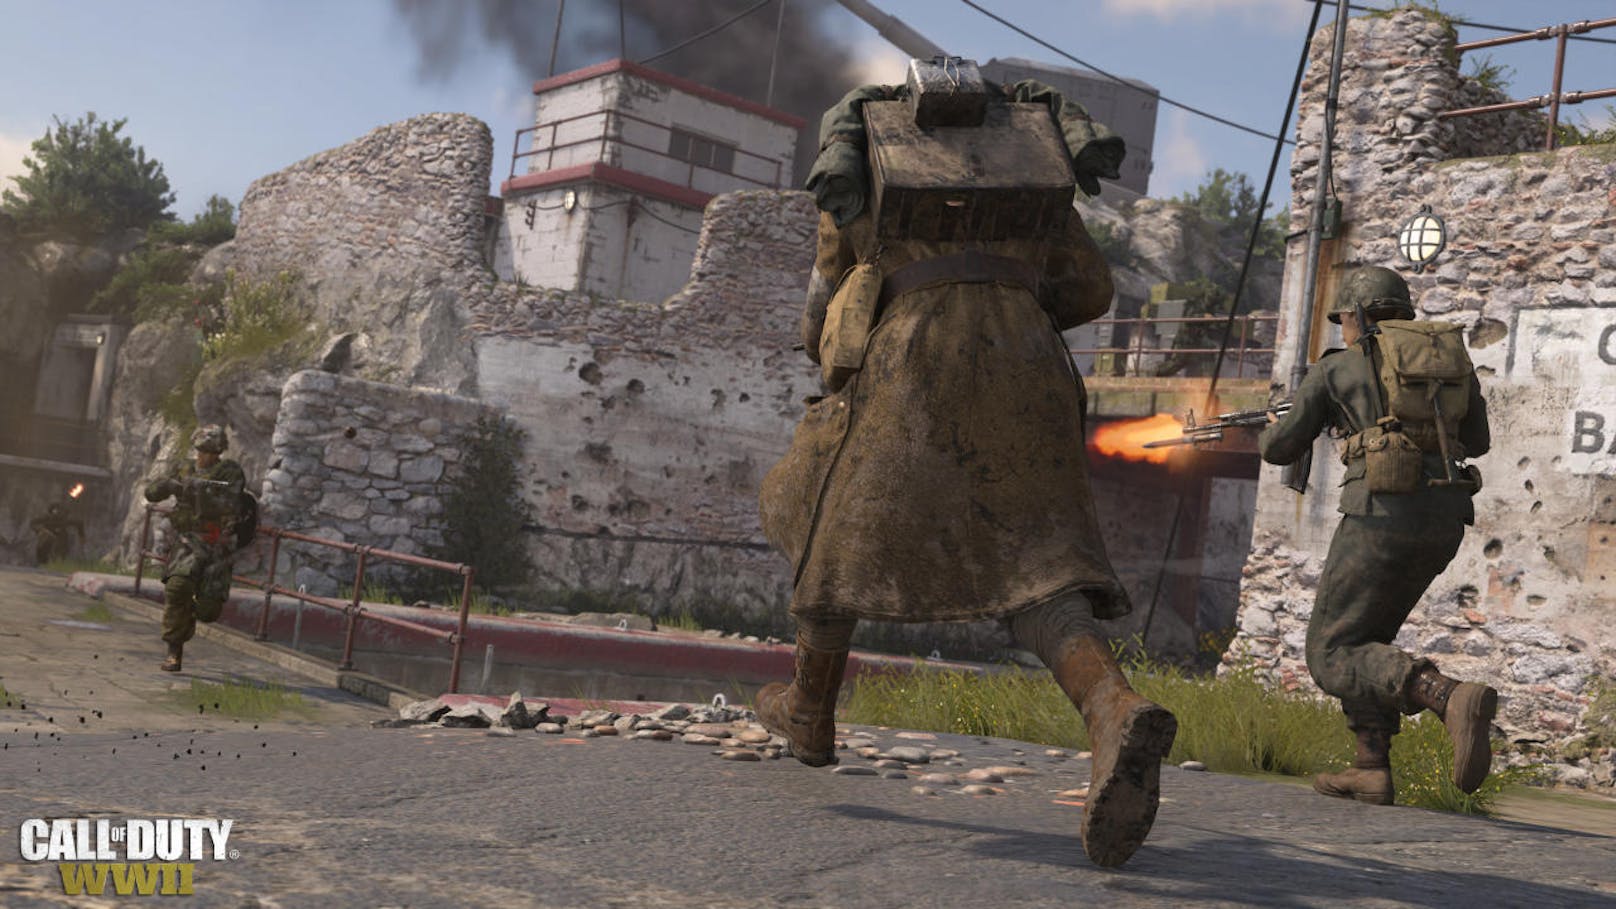 Call of Duty: WWII profitiert deutlich davon, dass nicht mehr vorwiegend auf gewaltige Gegnermassen geschossen wird, sondern immer wieder Einzelbegegnungen hervorstechen.